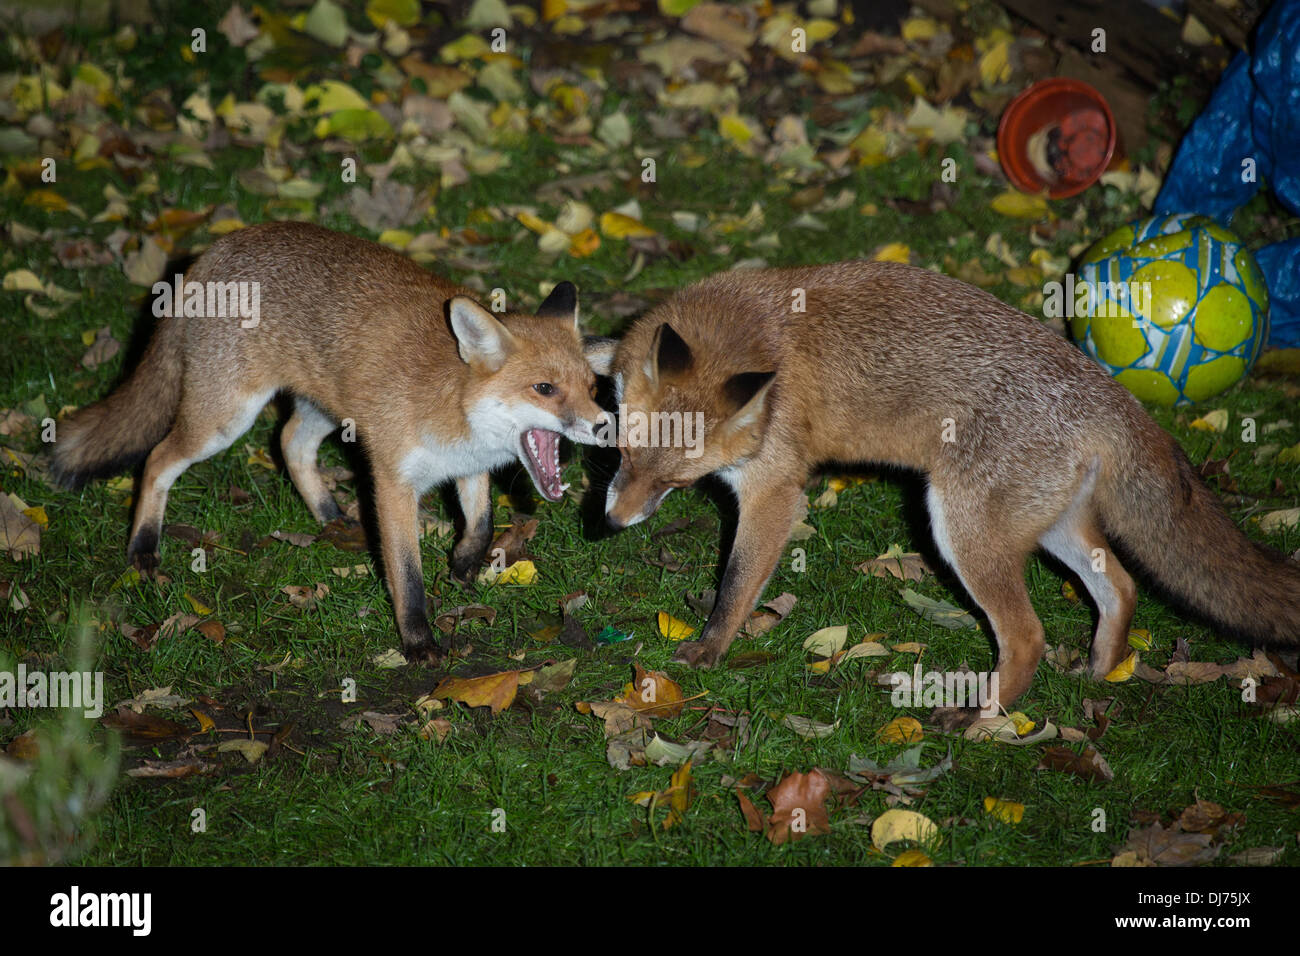 Les renards urbains nuit jouer combats dans un jardin arrière, Londres Stoke Newington Banque D'Images